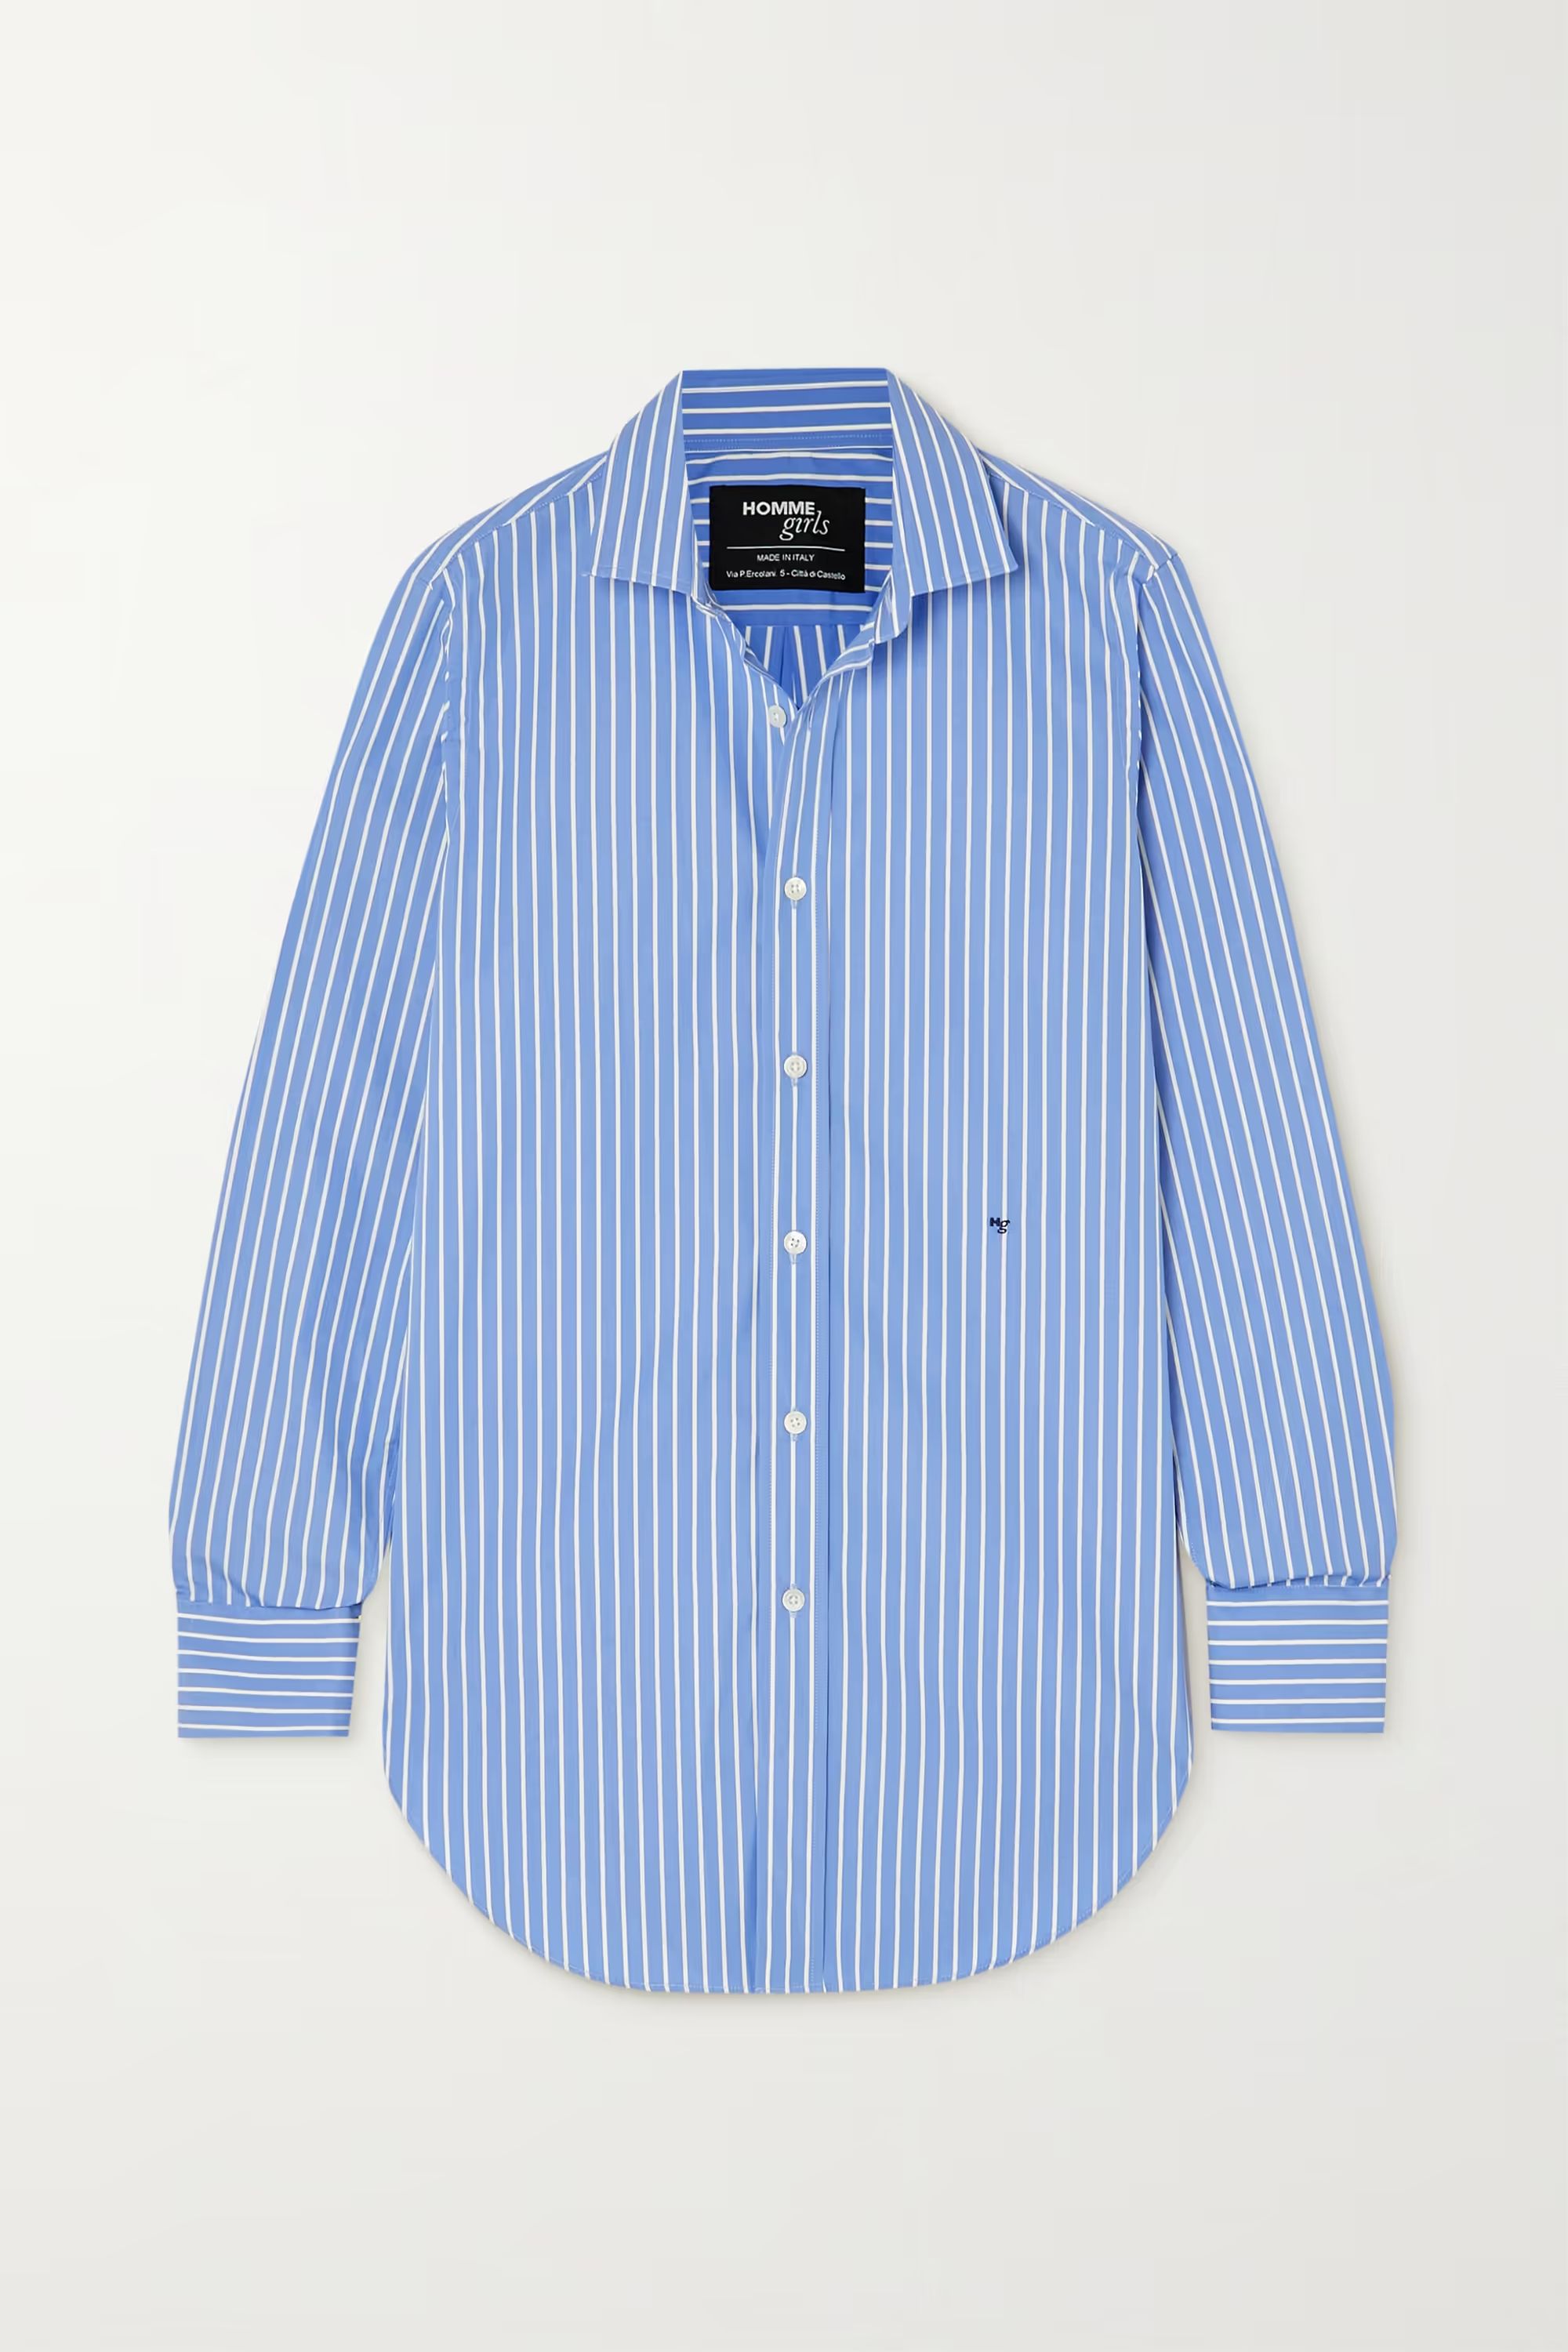 HOMMEGIRLSStriped cotton-poplin shirt | NET-A-PORTER (US)